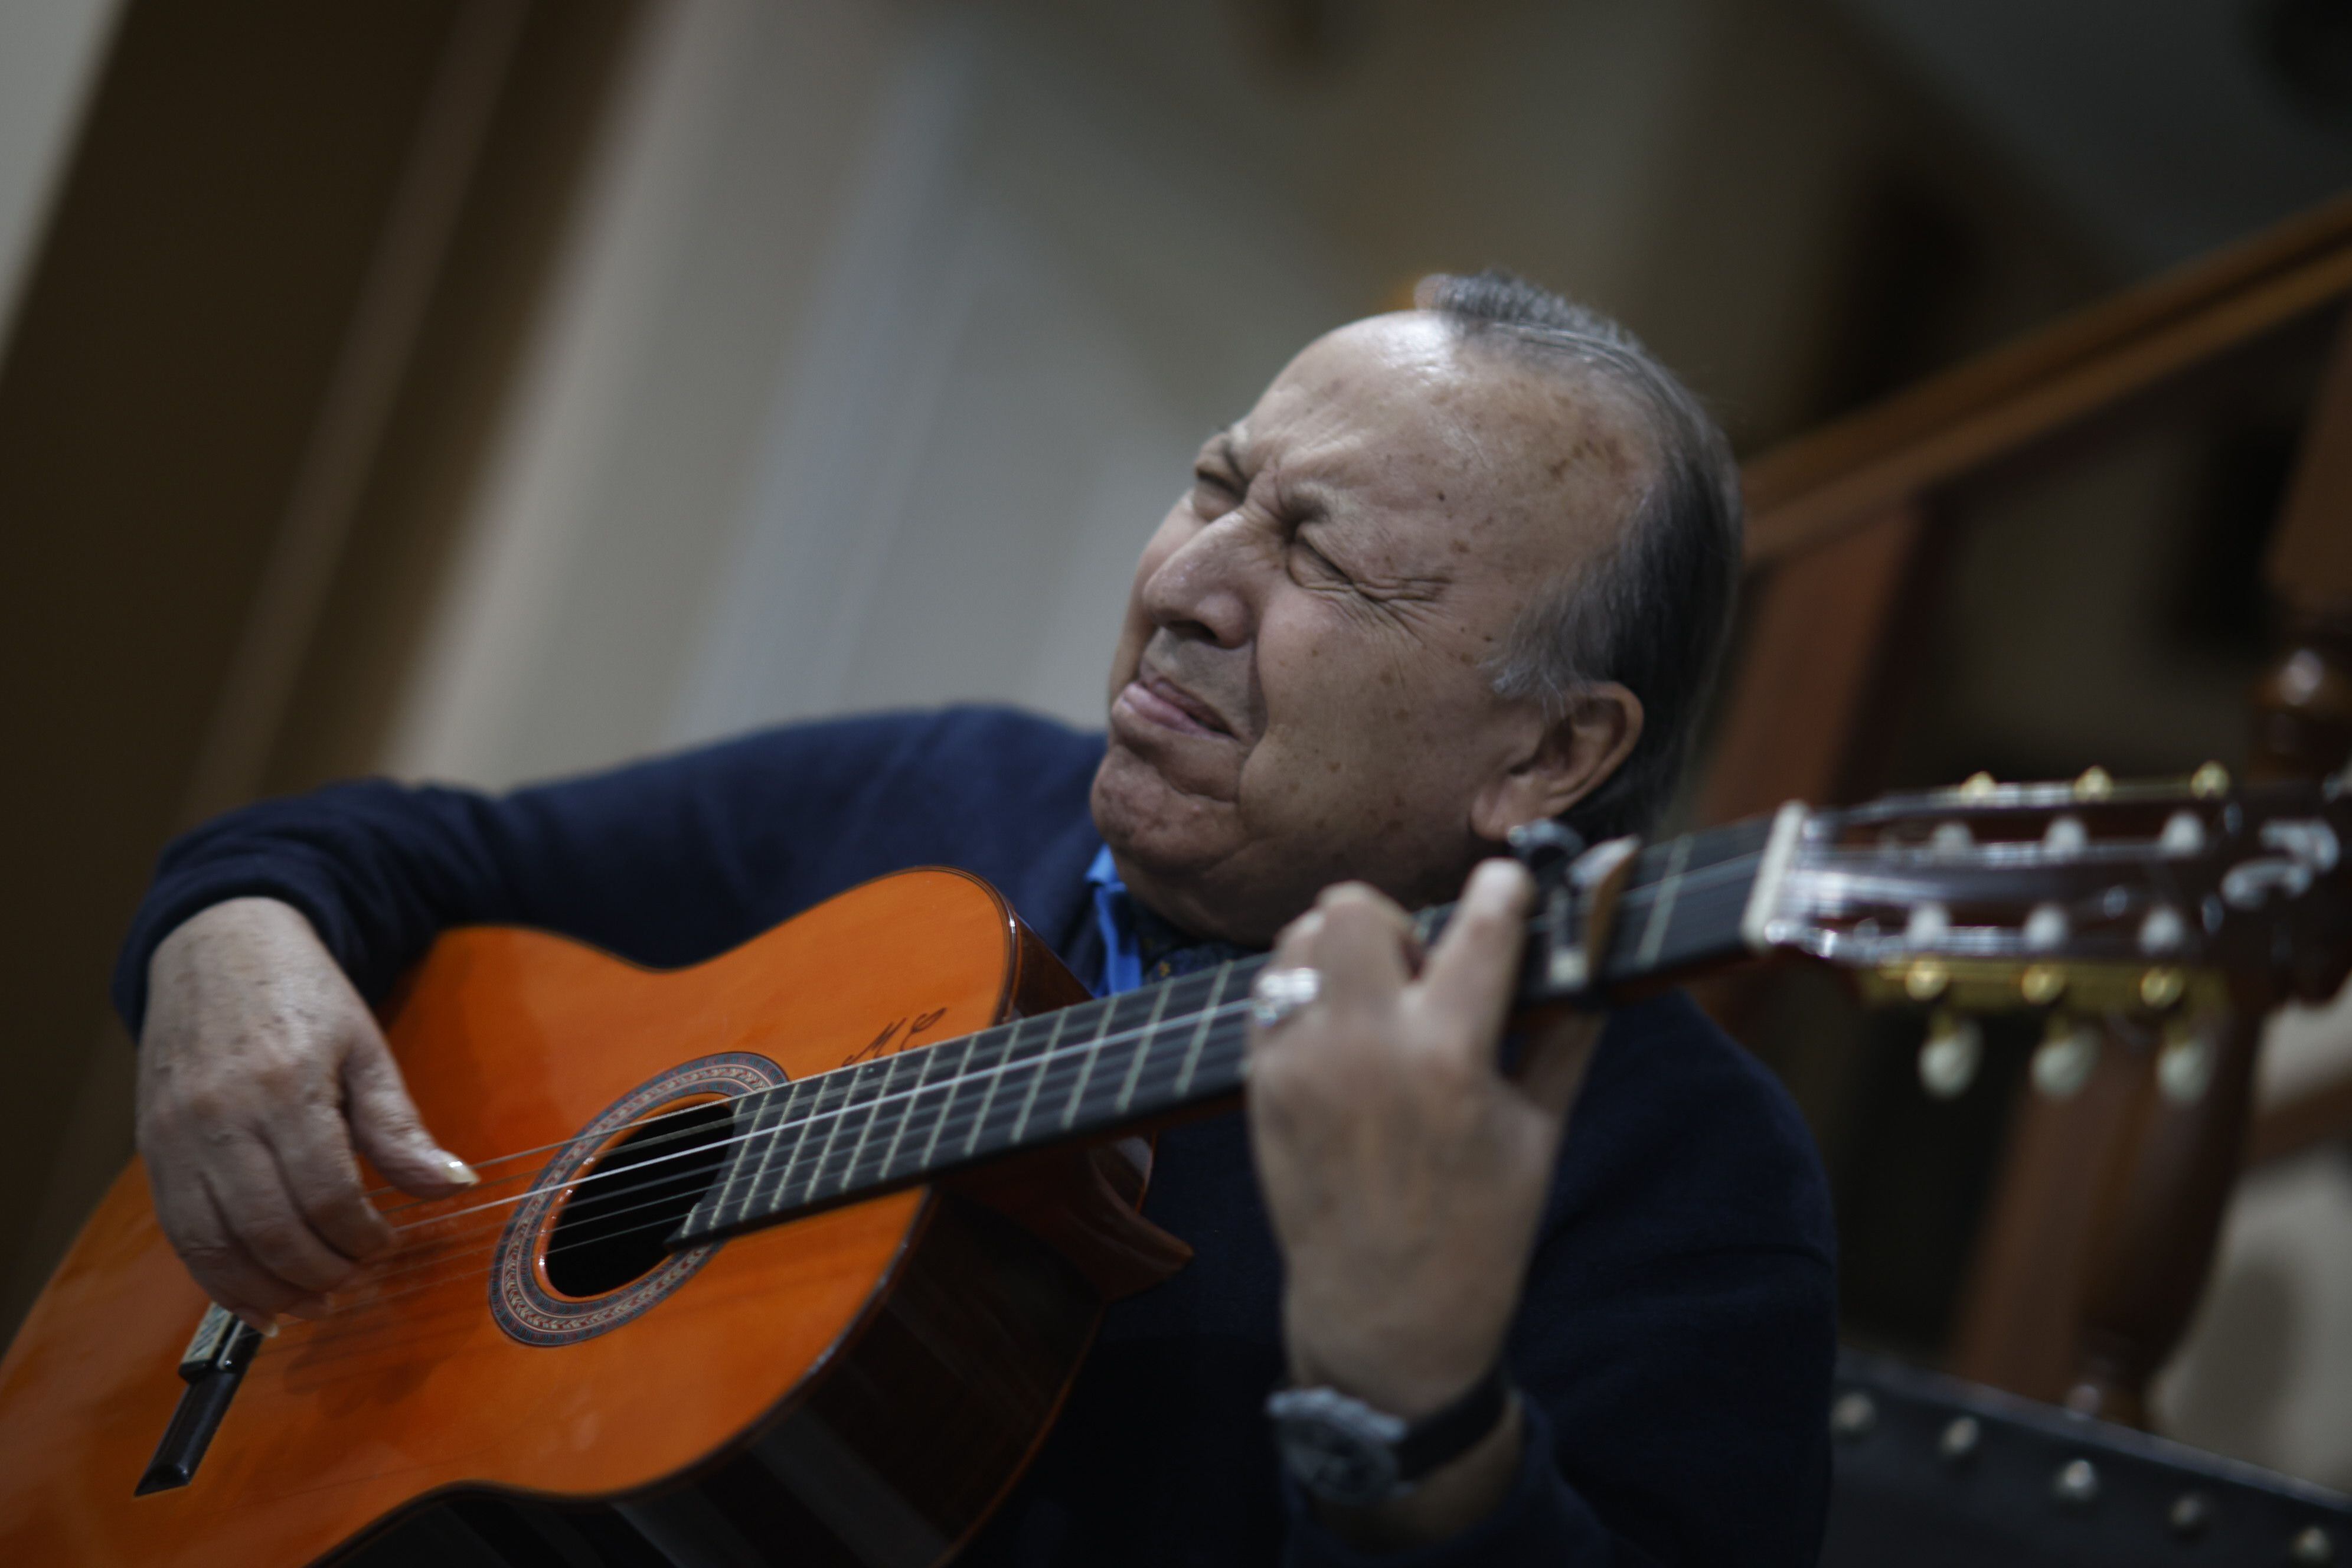 Paco Cepero, durante la entrevista, tocando la guitarra.